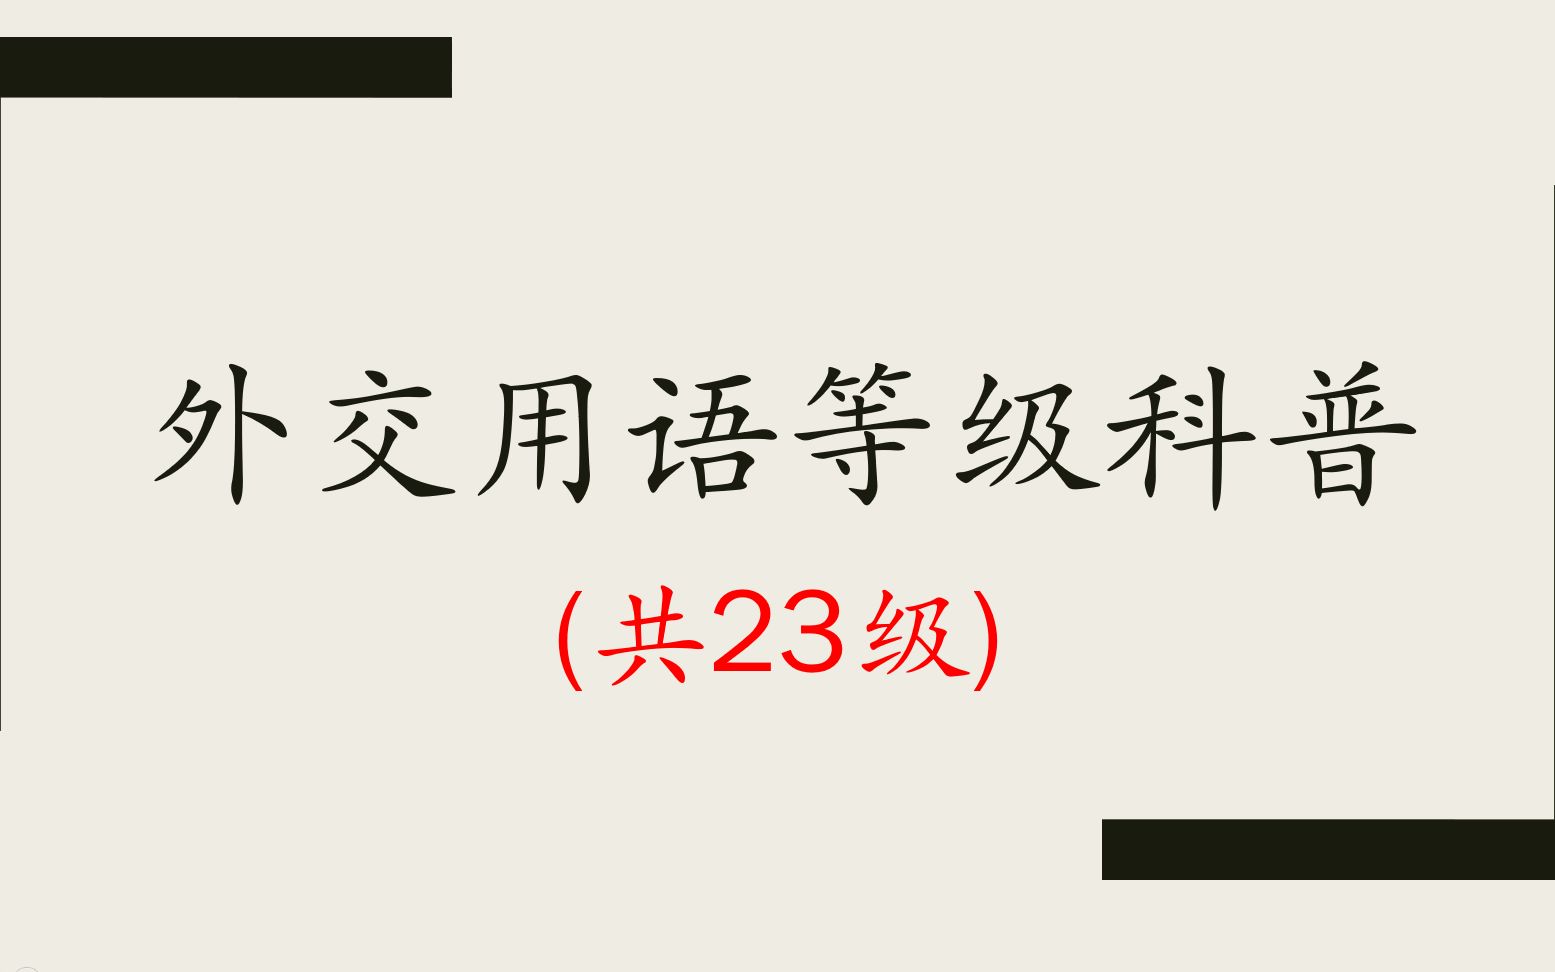 中国23级外交用语，最后一级只说过两次！